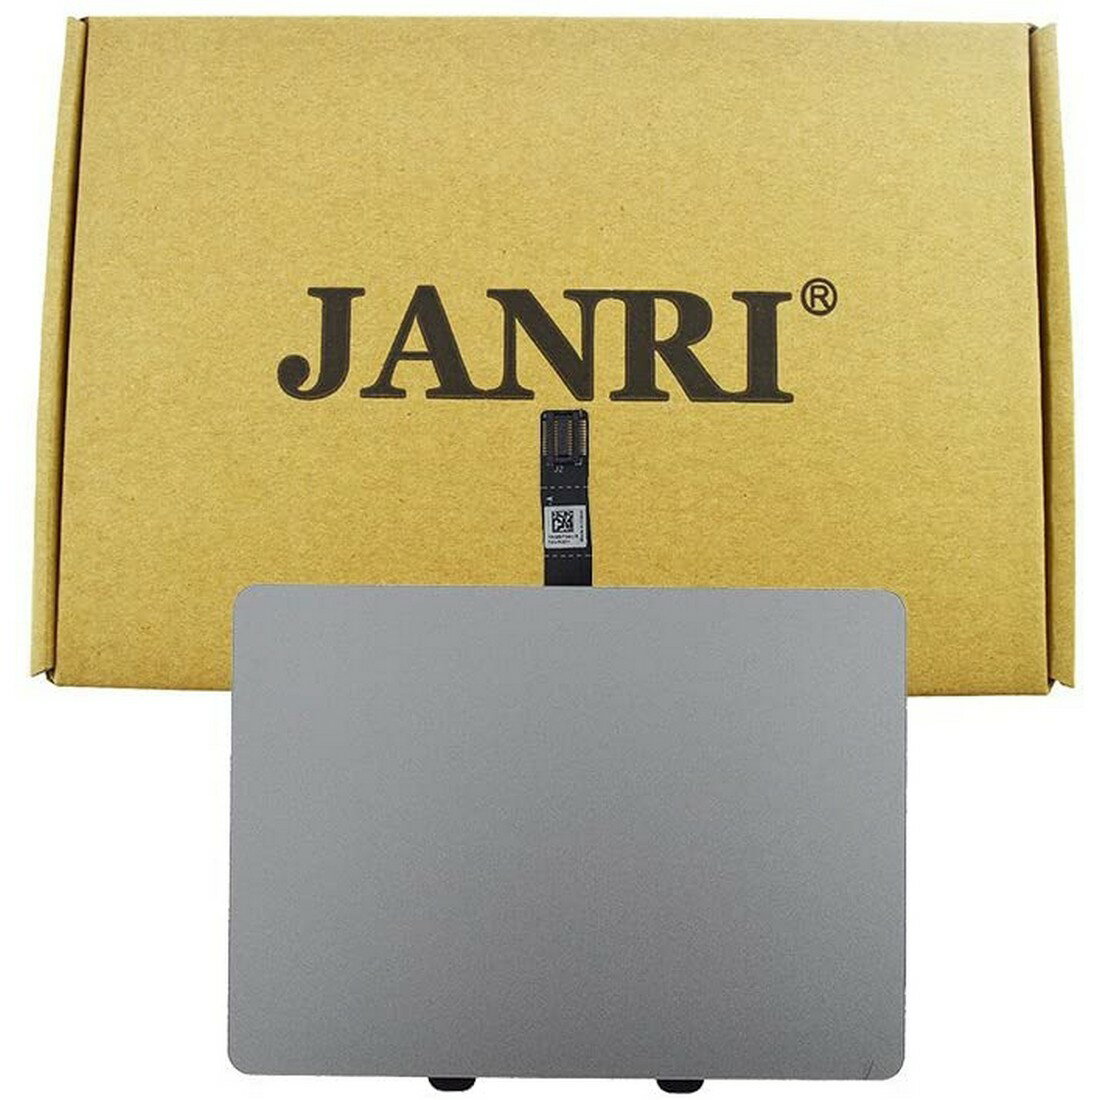 JANRI 交換用トラックパッド タッチパッド ケーブル付き MacBook Pro Unibody 13インチ 2009後期 2010 2011 2012 A1278 MB990LL/A MB991LL/A MC724LL/A MC374 【代引き不可】